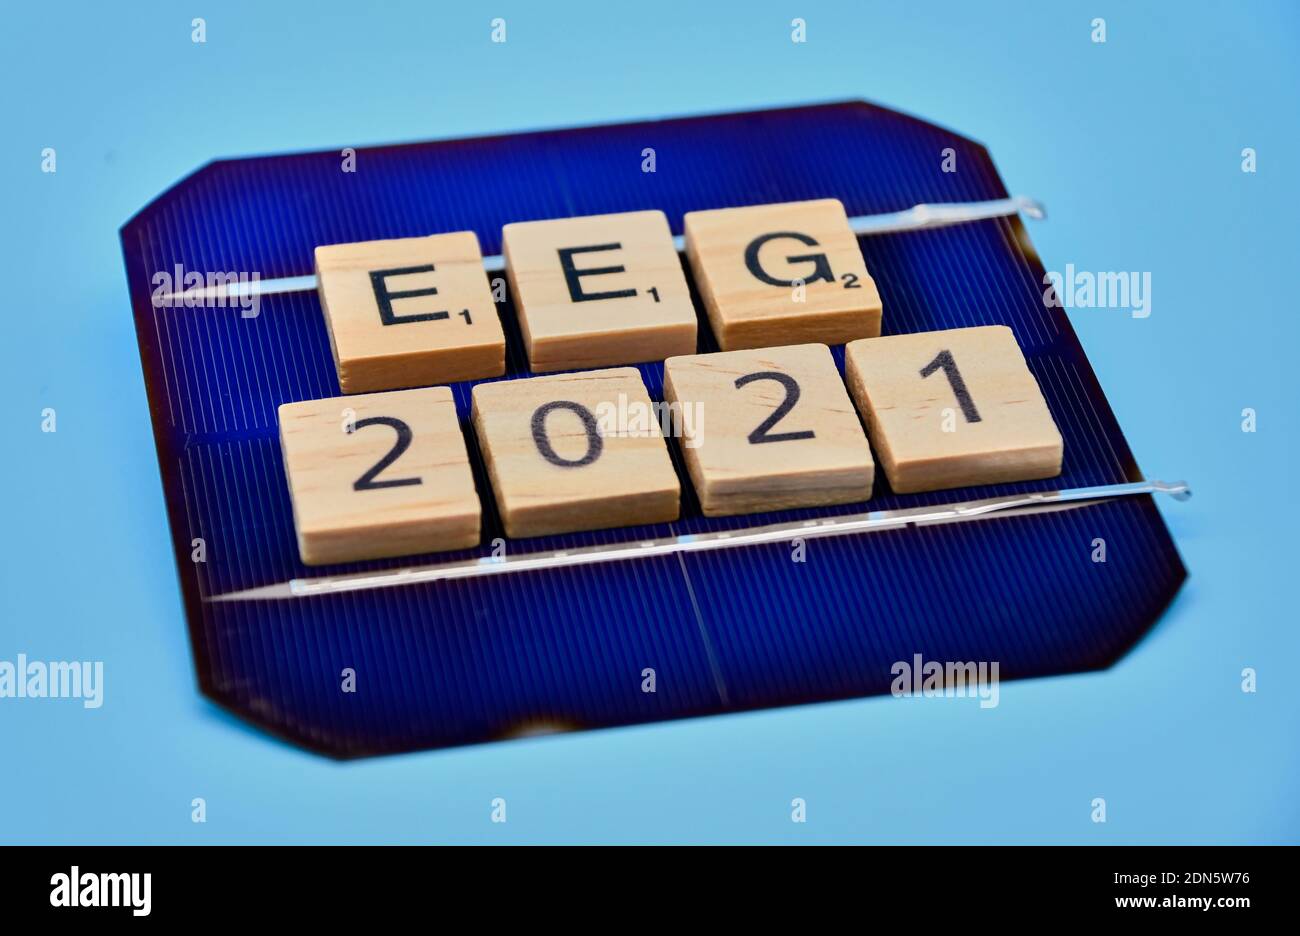 Symbol eeg2021 Stockfoto